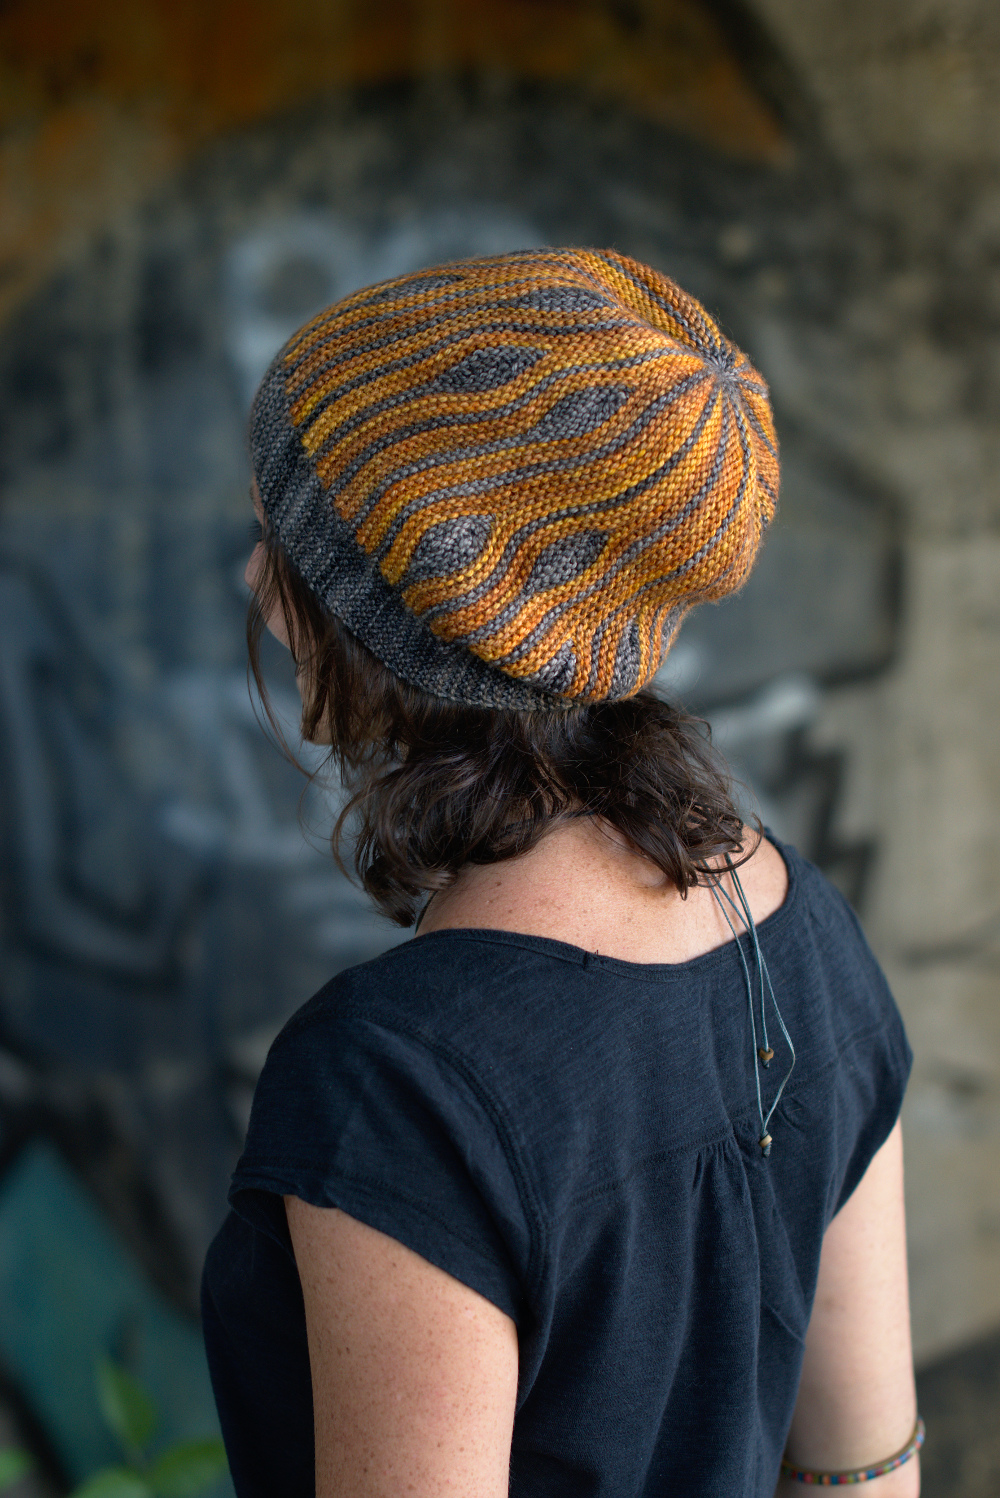 Korra sideways knit short row colourwork hand knitted Hat pattern